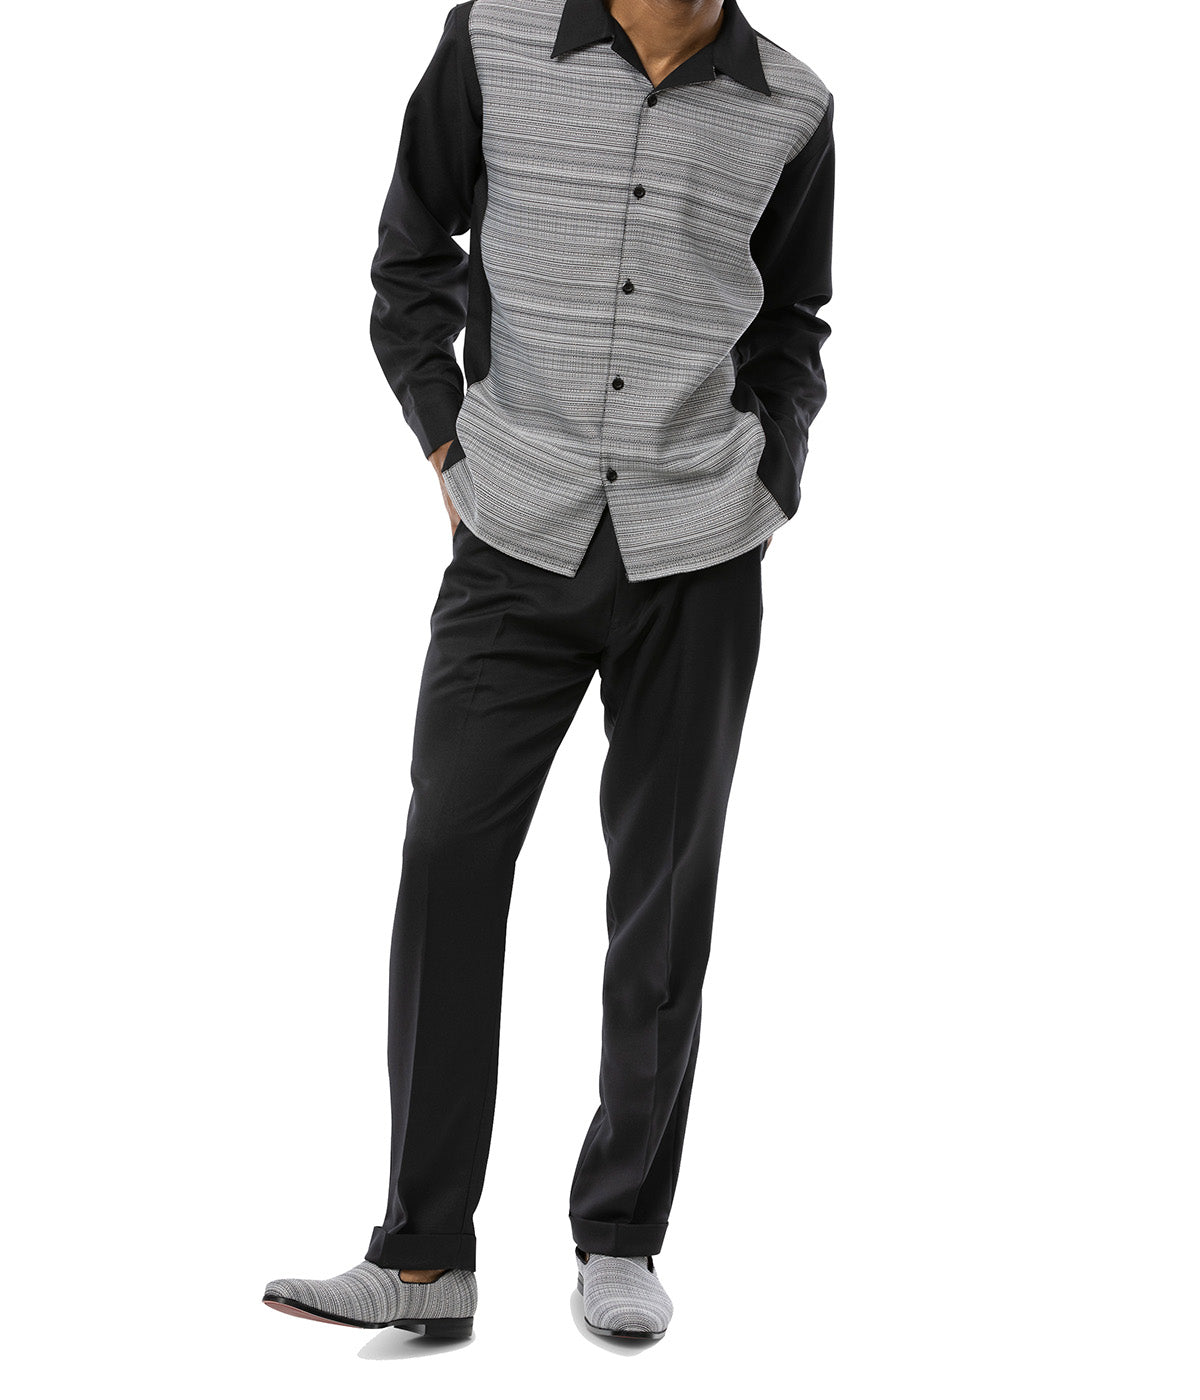 Black Weave Printed 2 Piece Long Sleeve Walking Suit Set | Suits ...